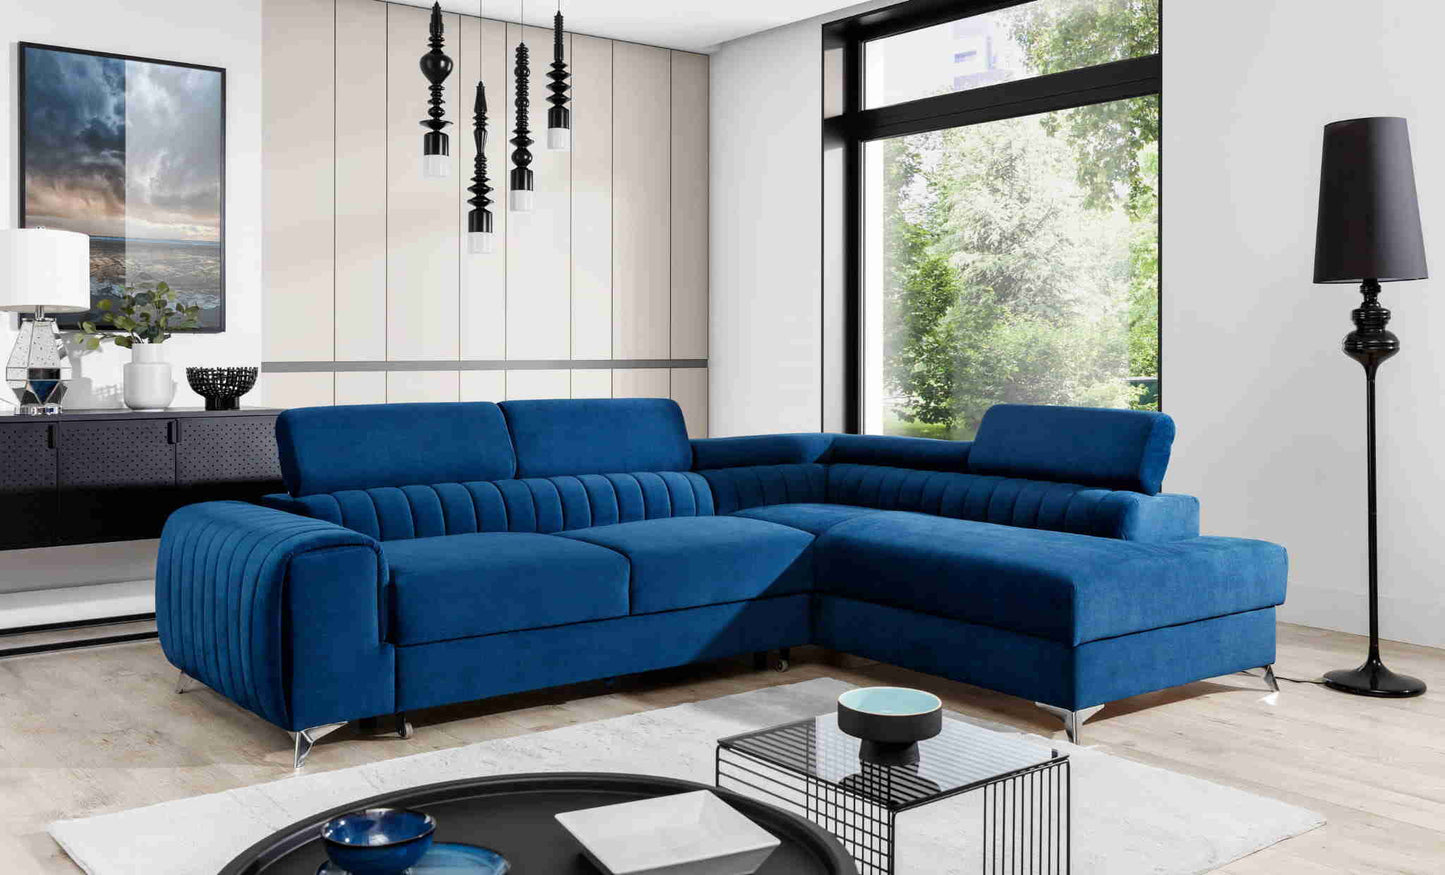 Wunderschöne Wohnlandschaft Laurence mit wunderschönem L-förmigen Sofa in blauer Farbe und schwarzer Lampe